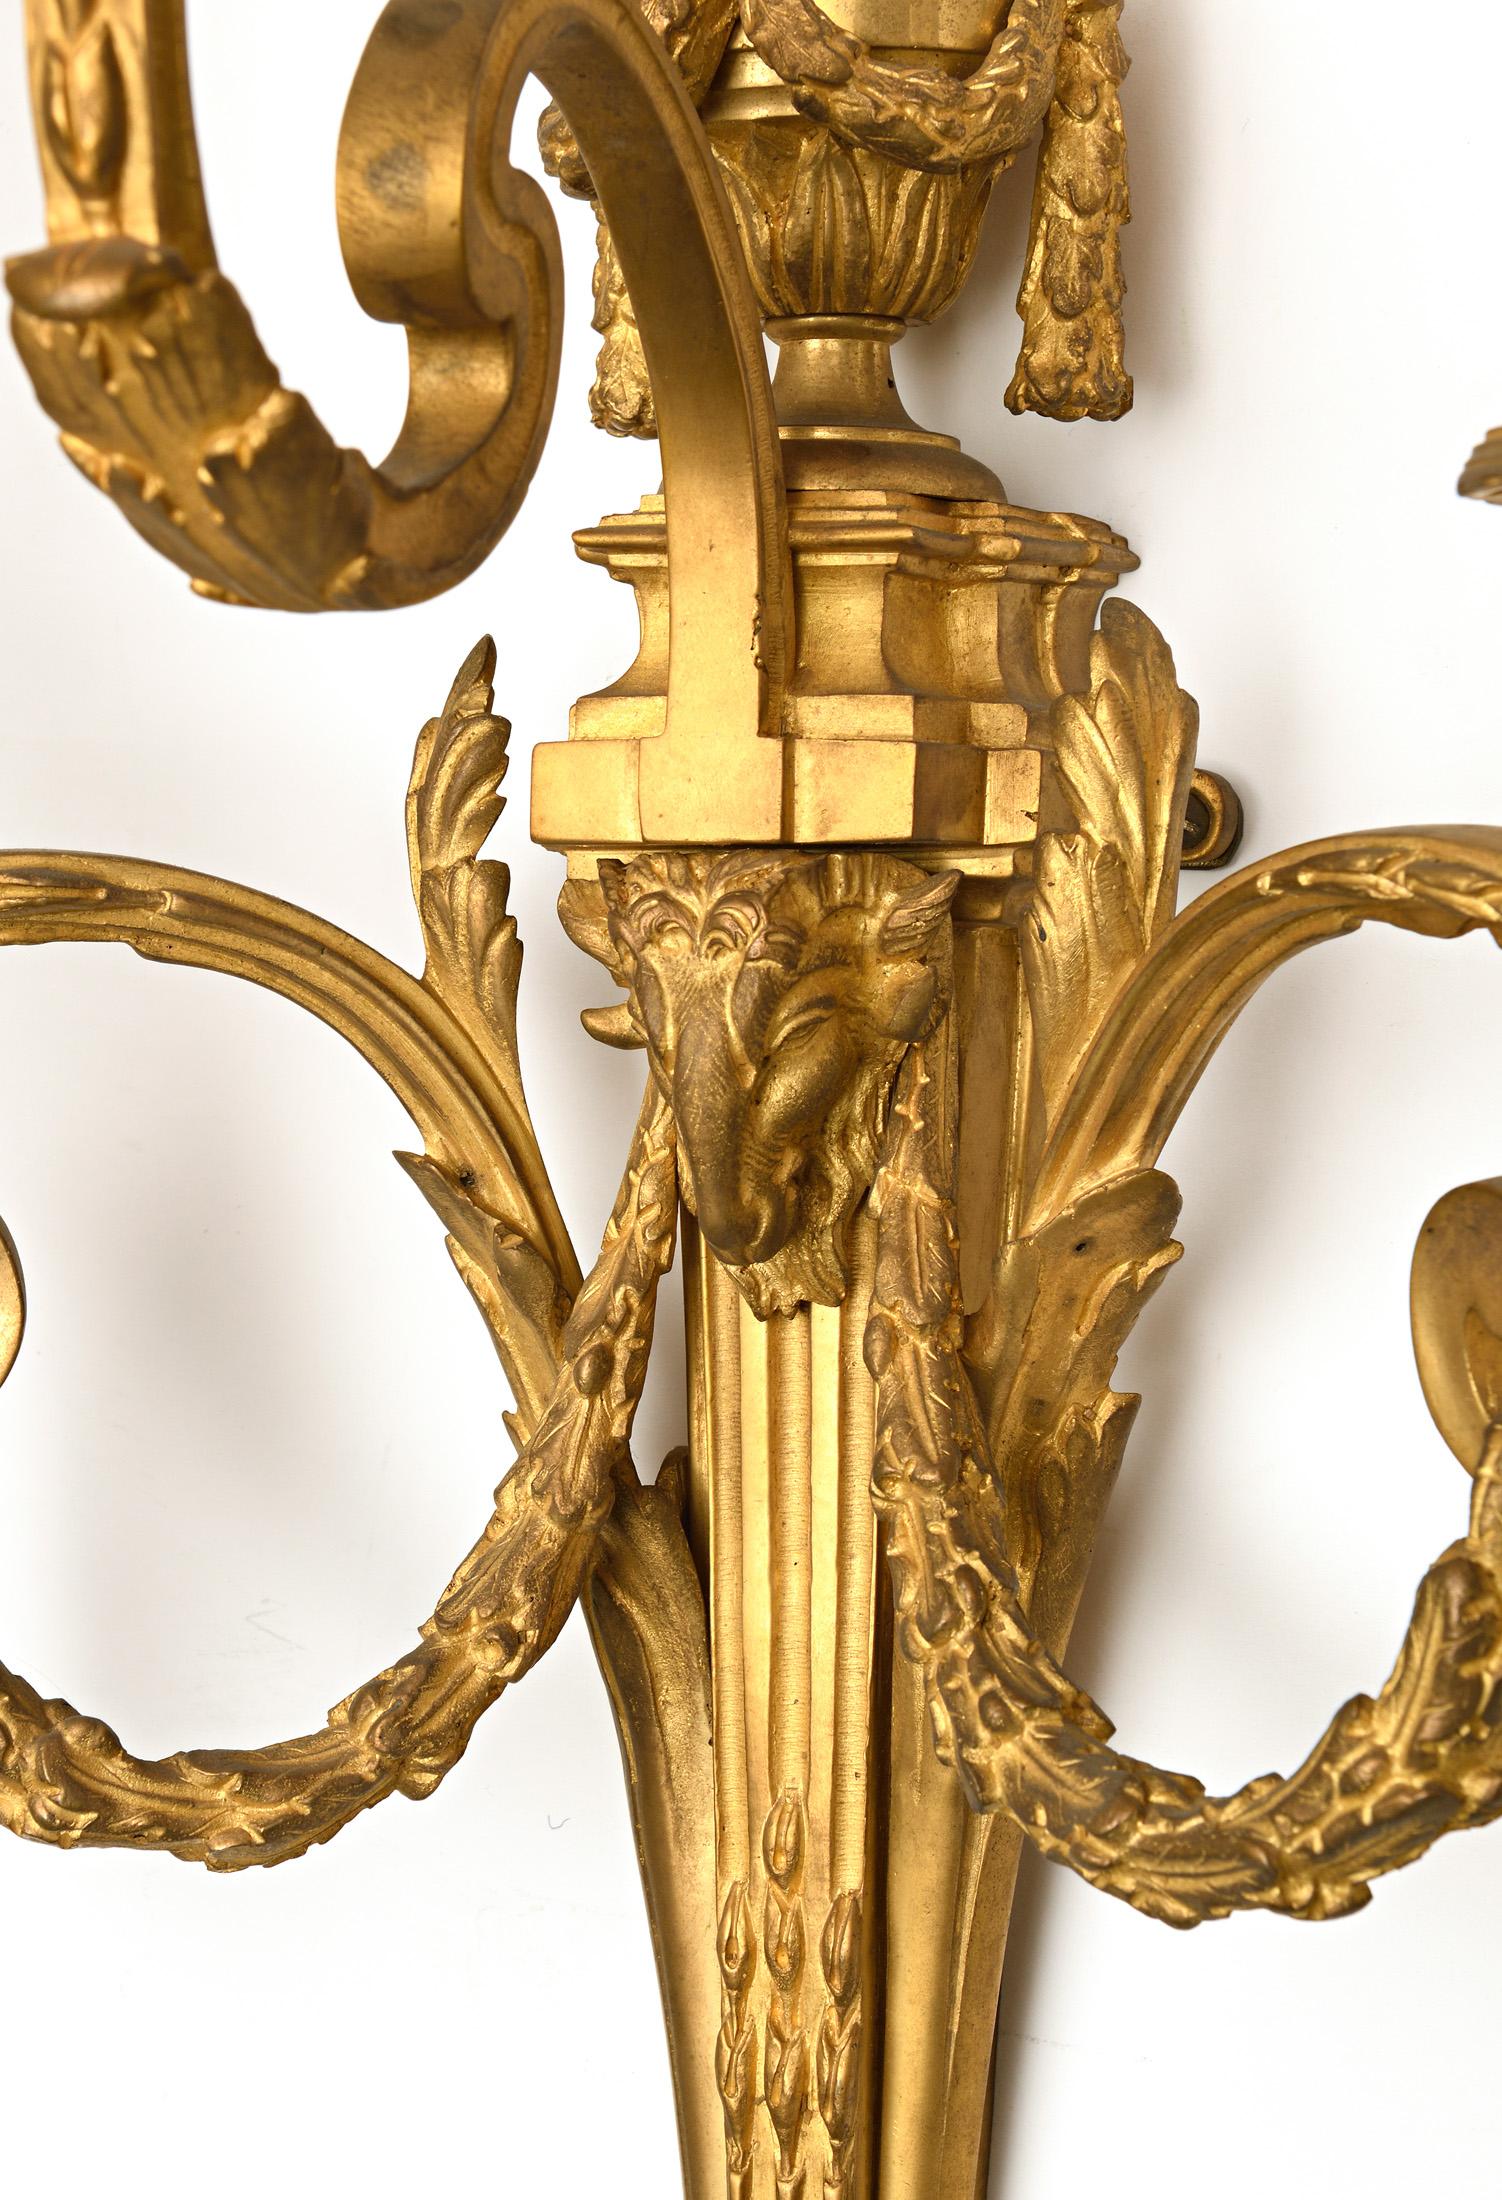 Exceptionnelle paire d'appliques assorties
Superbe suite de quatre scones de style Louis XVI en bronze doré avec têtes de béliers et guirlande.
Ces quatre appliques sont exactement de la même taille et présentent une très légère différence dans la